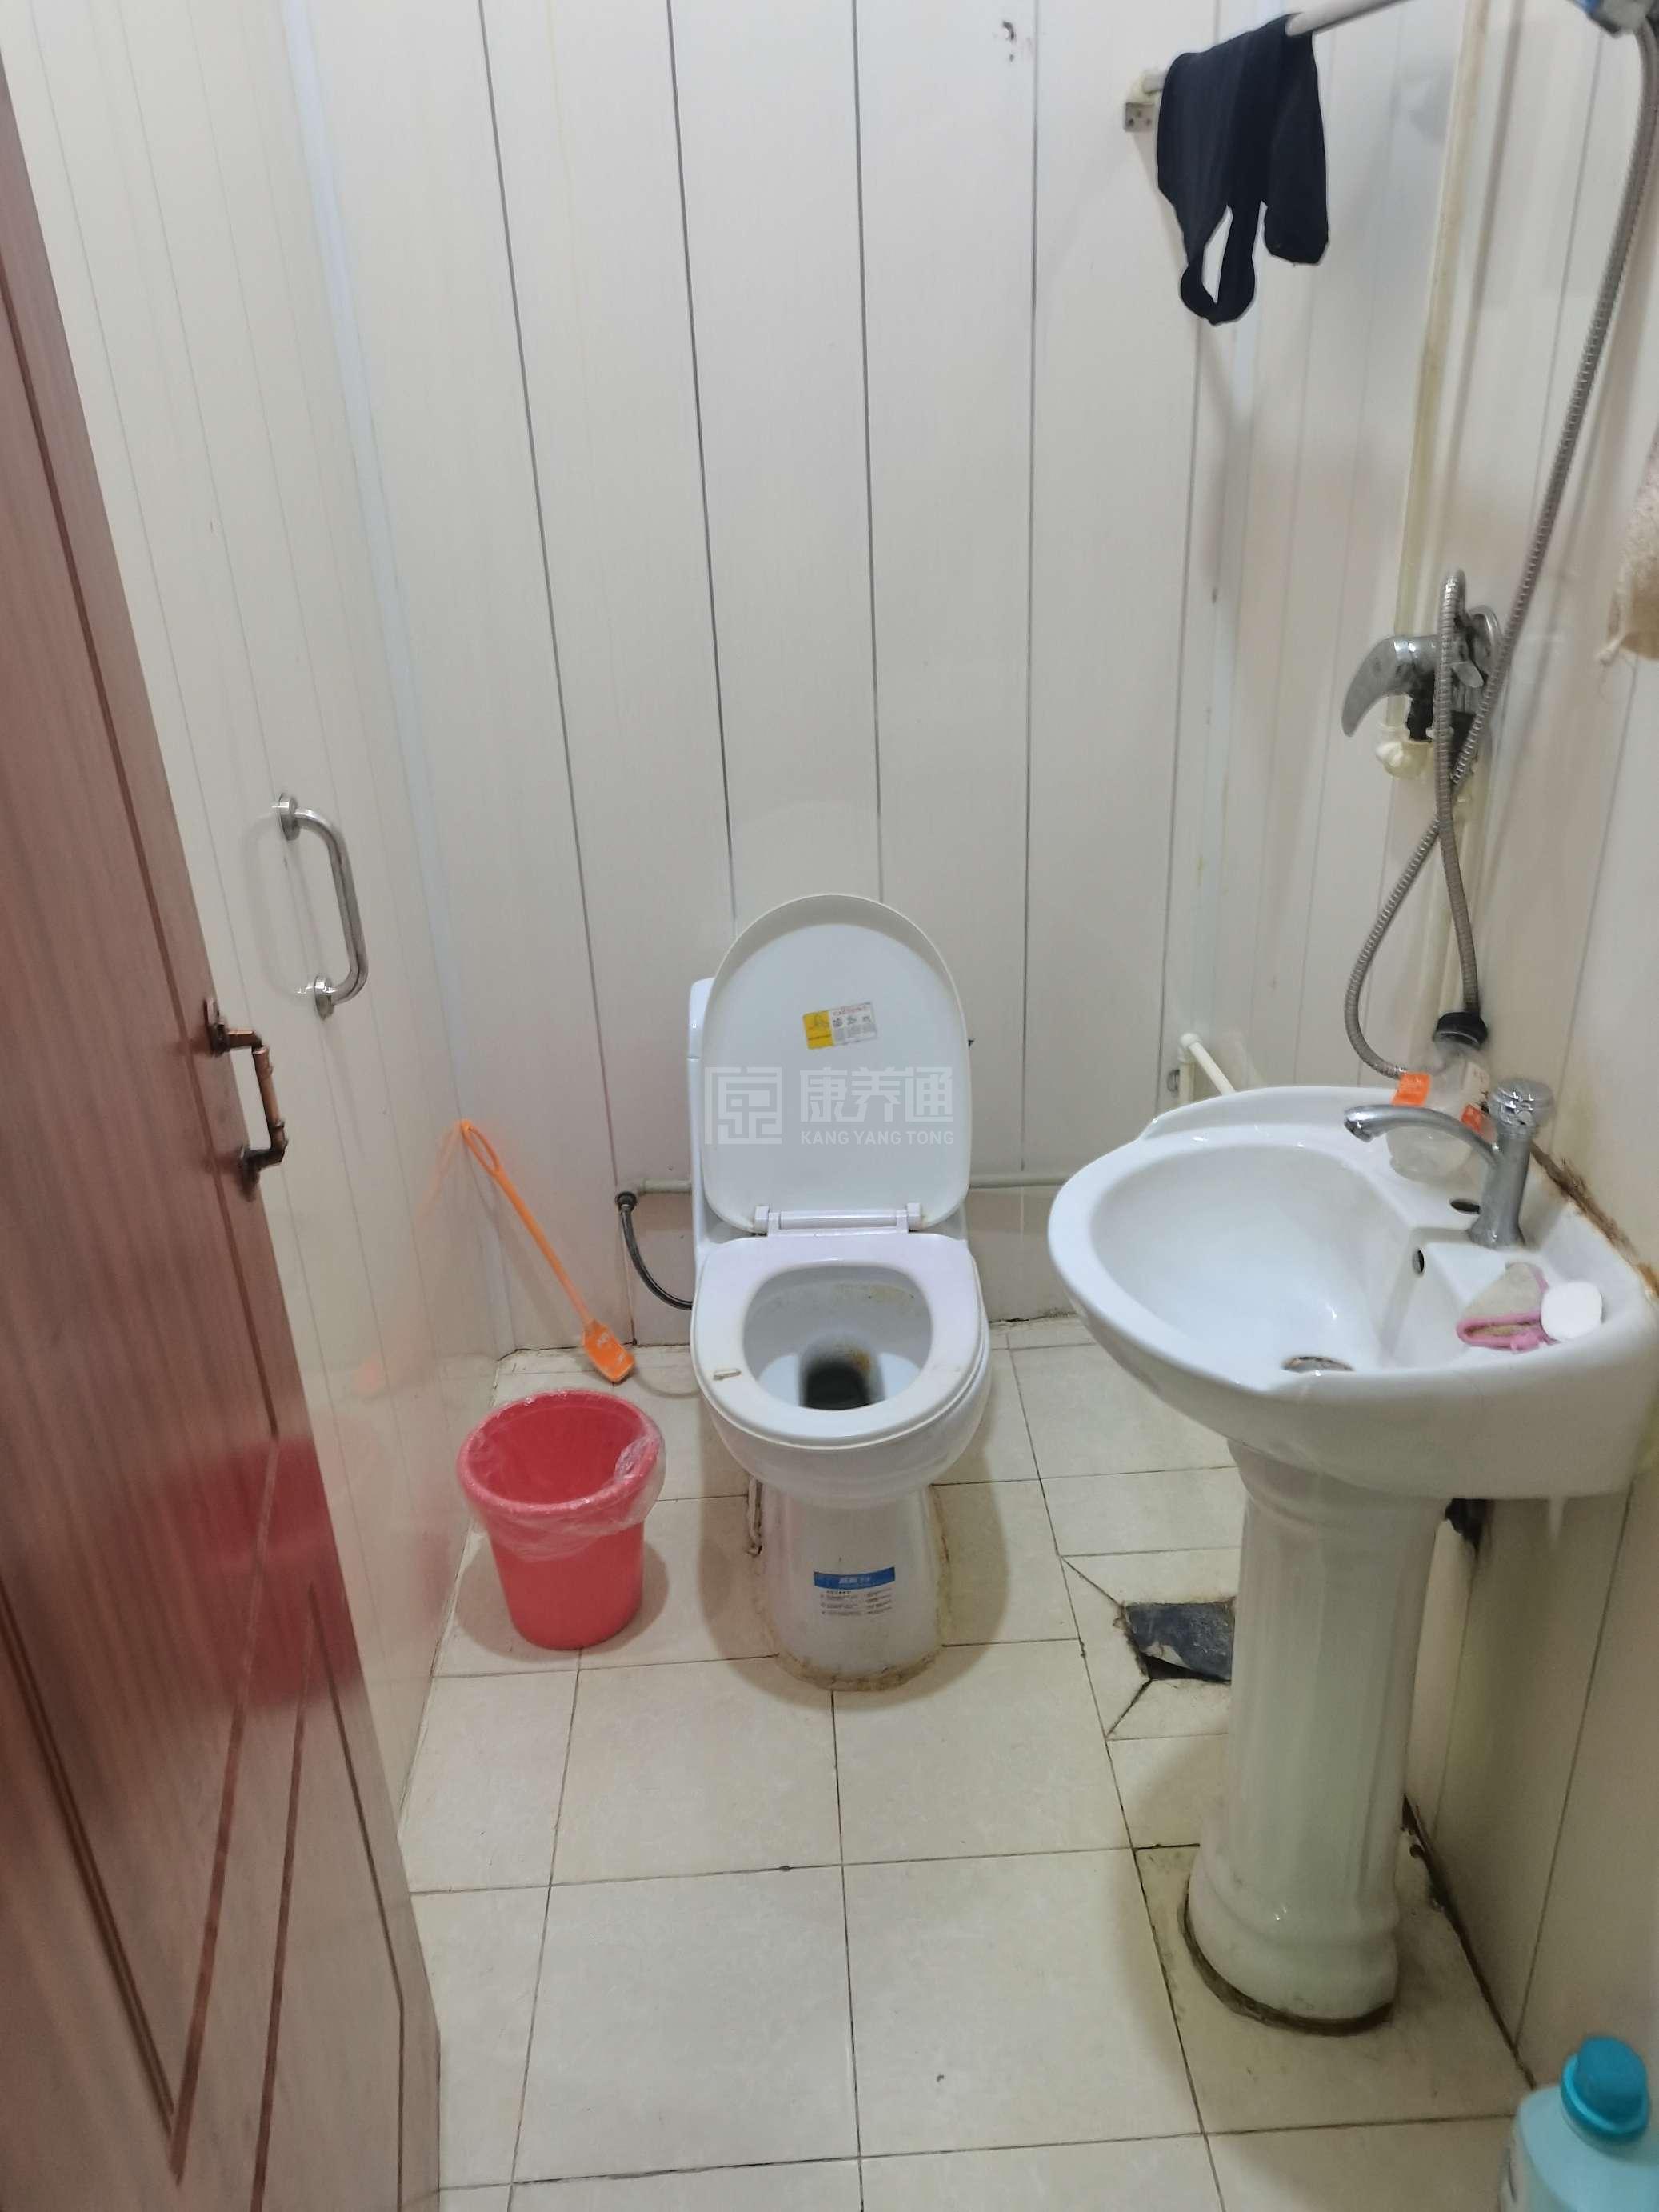 天津市红桥区银望养老院环境图-洗手间